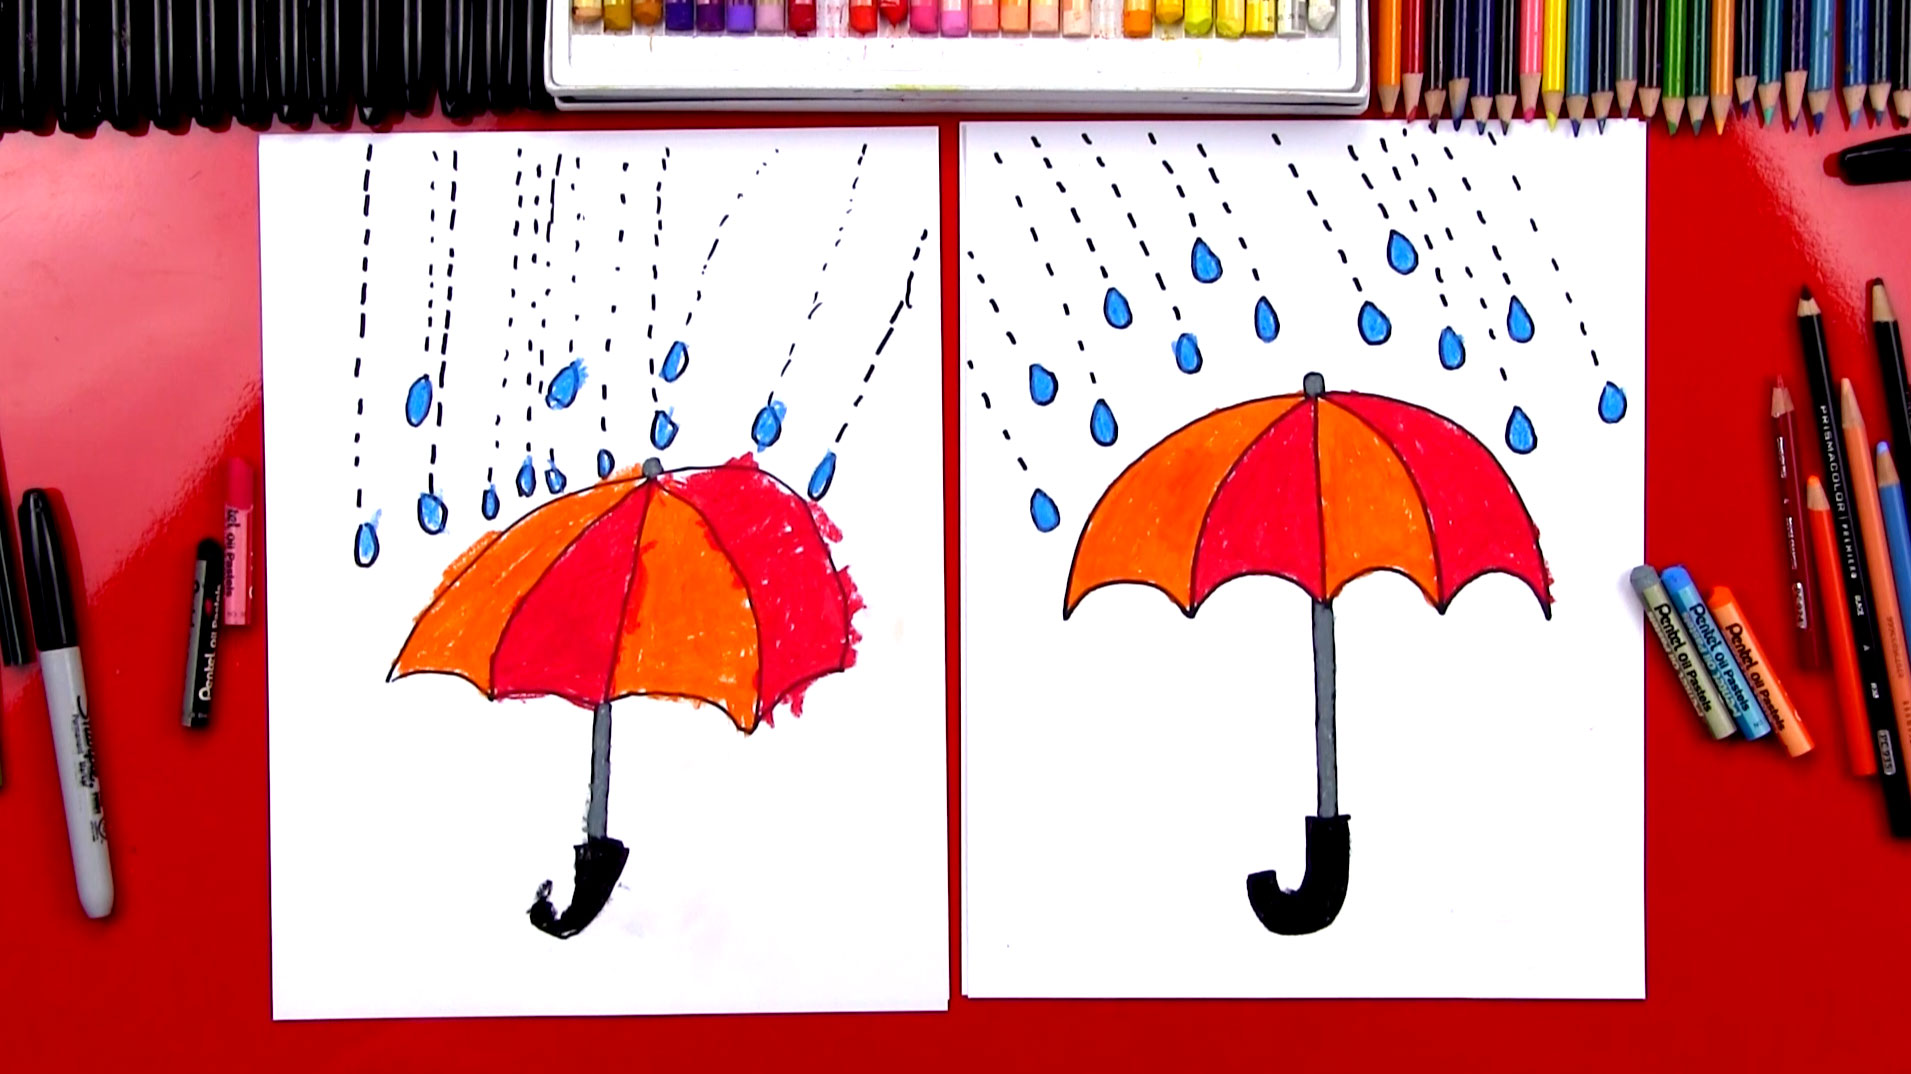 How To Draw An Umbrella - Art For Kids Hub - 1911 x 1074 jpeg 241kB